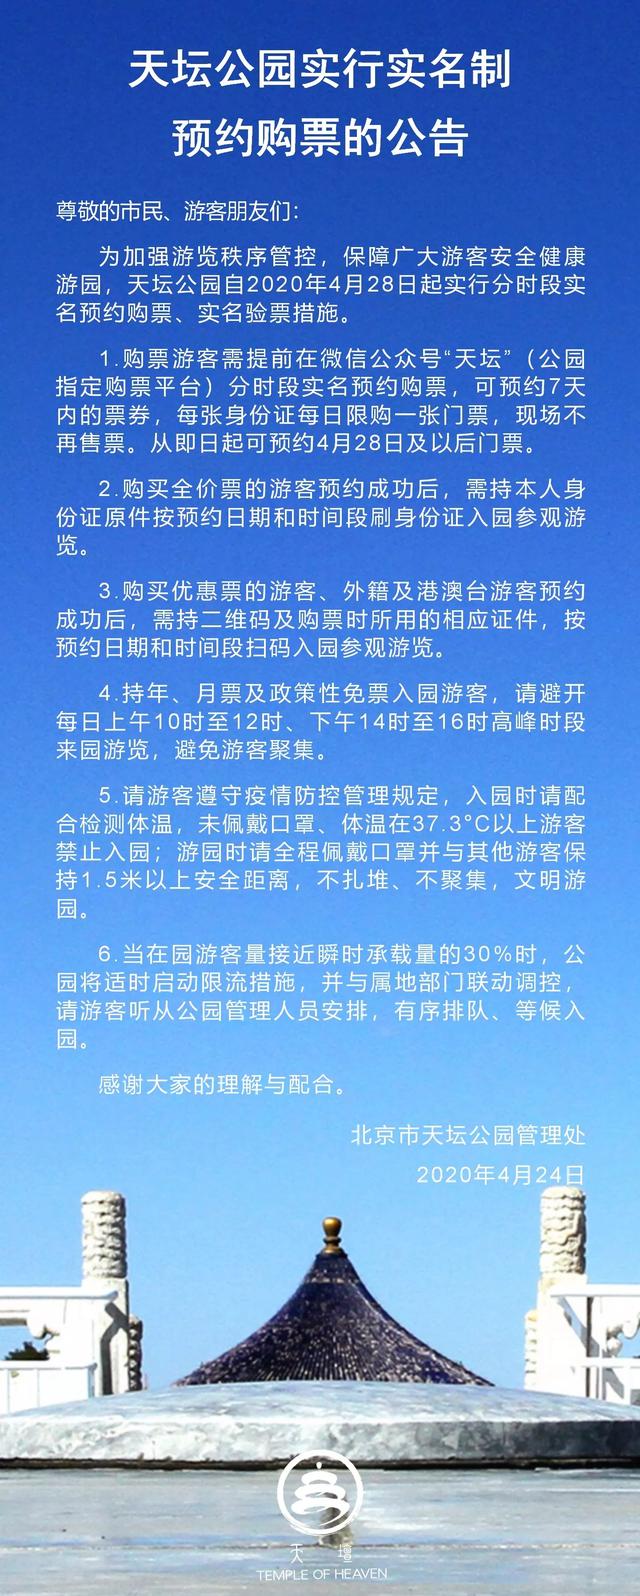 【旅行柚子君】北京天坛公园自4月28日起实行实名制预约购票